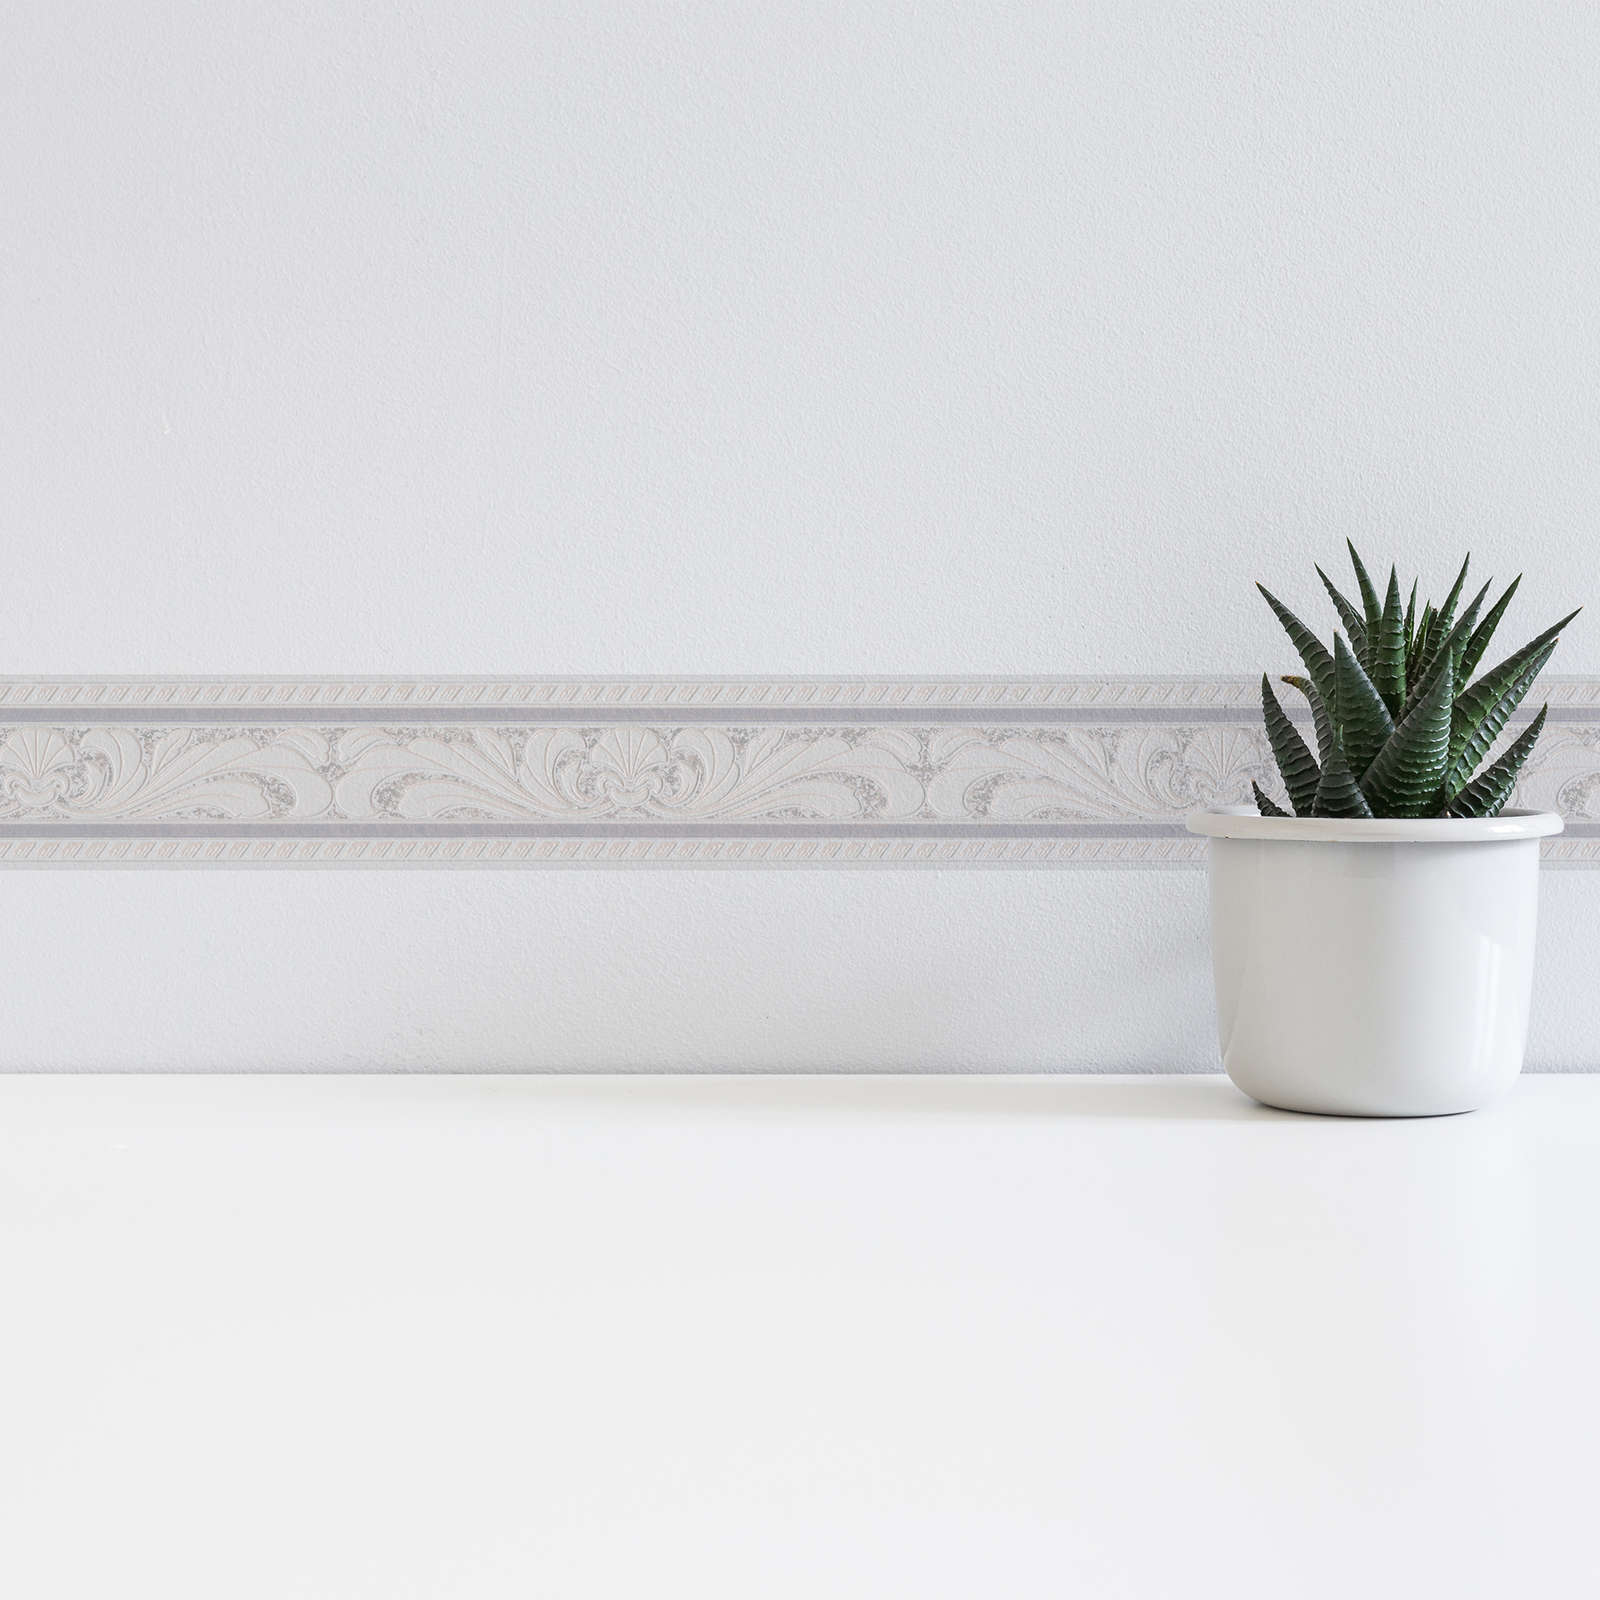             Wallpaper border with classicism design - cream, white
        